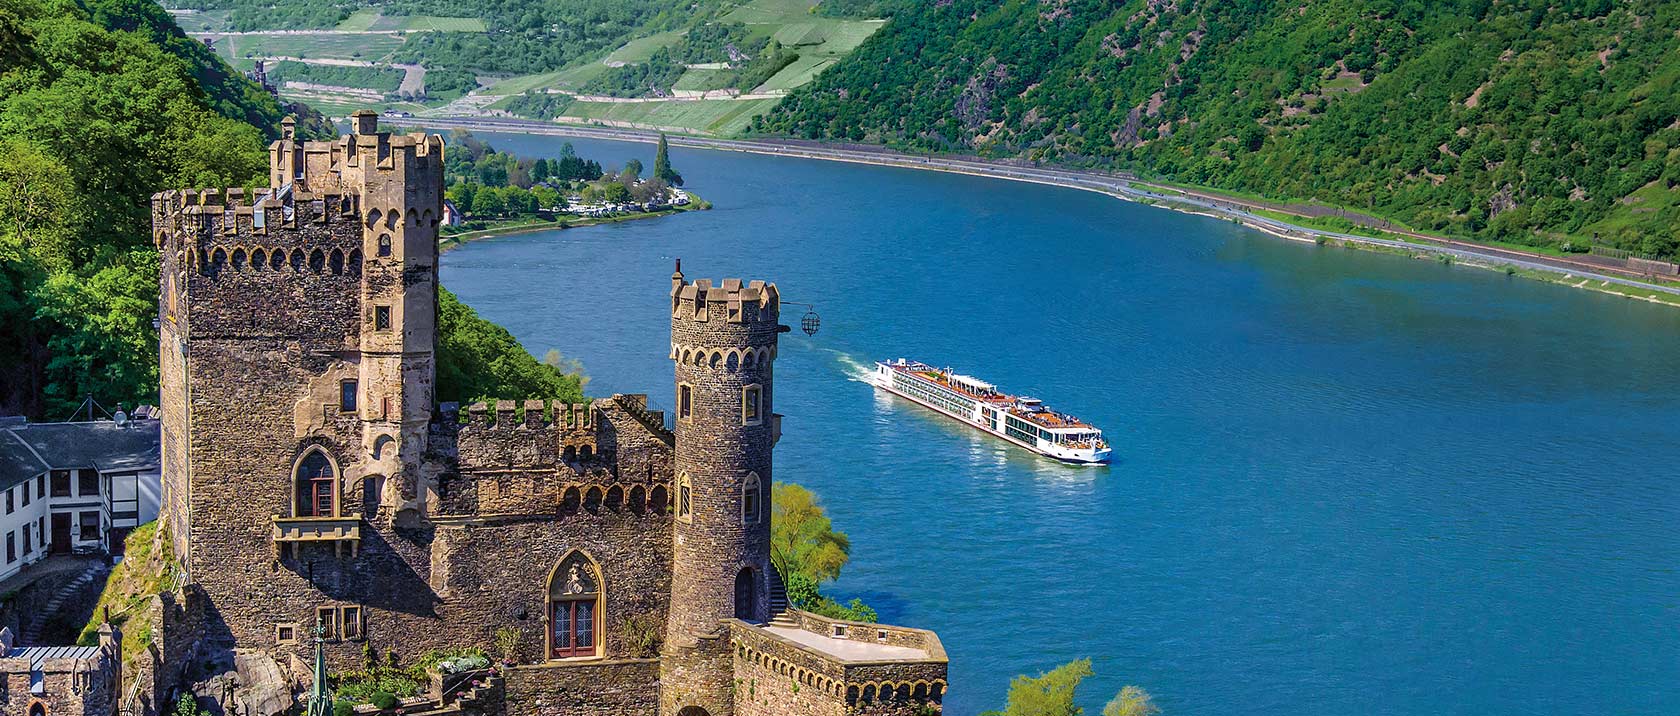 Romantic Danube